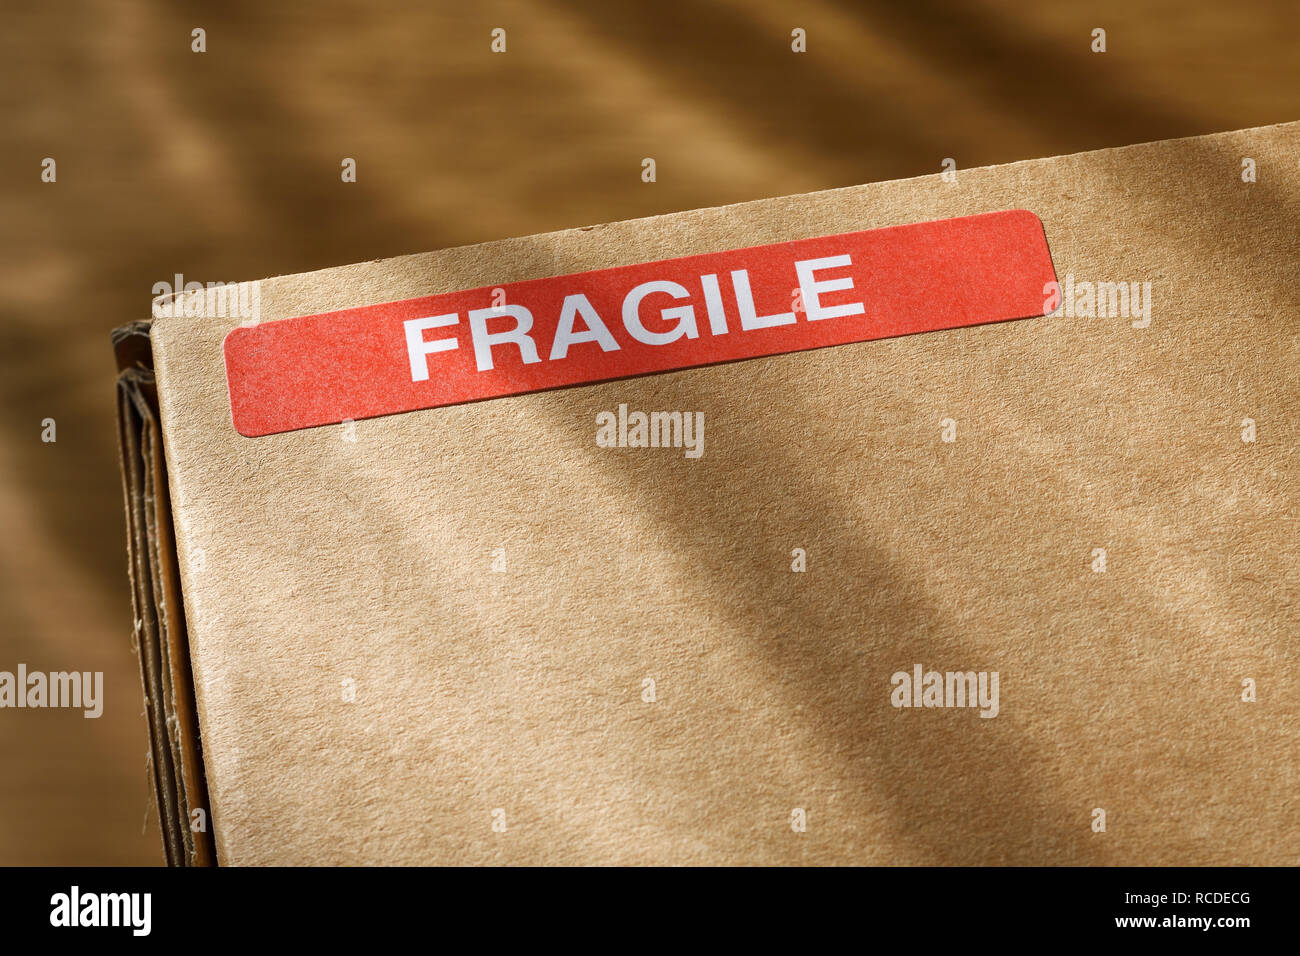 Una fragile un adesivo su una casella wcardboard Foto Stock